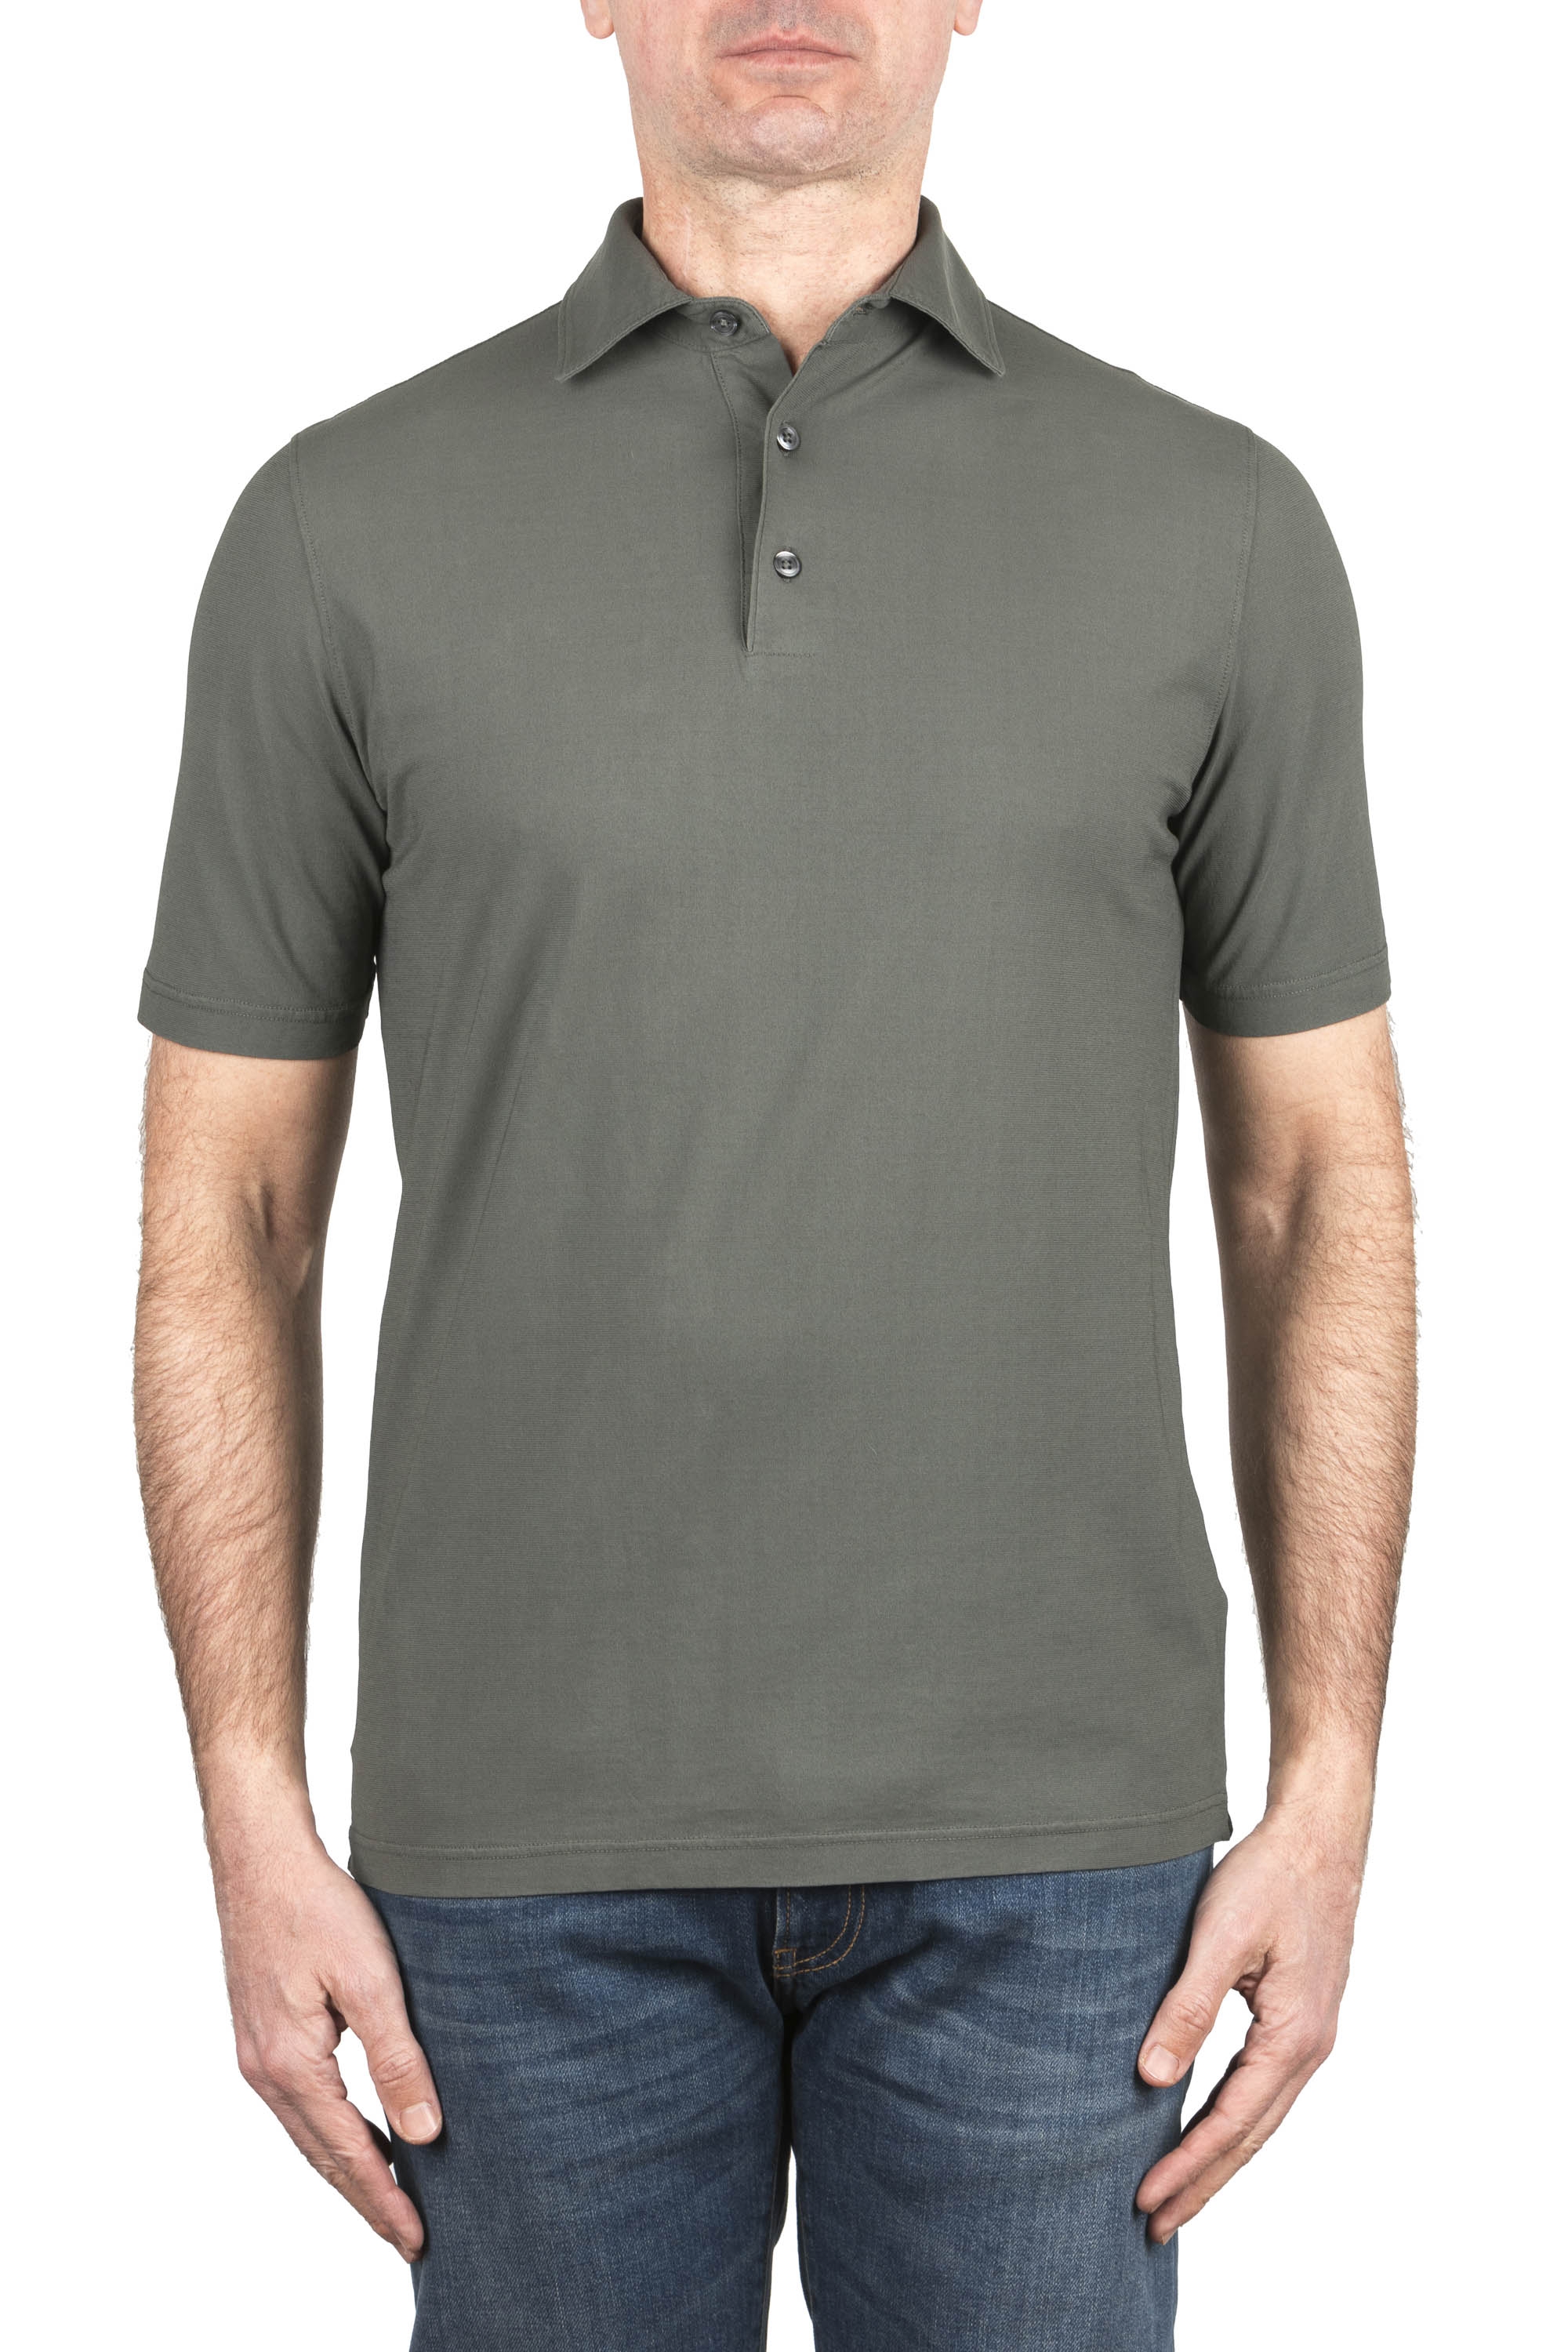 SBU 05069_24SS Short sleeve green light cotton polo shirt 01